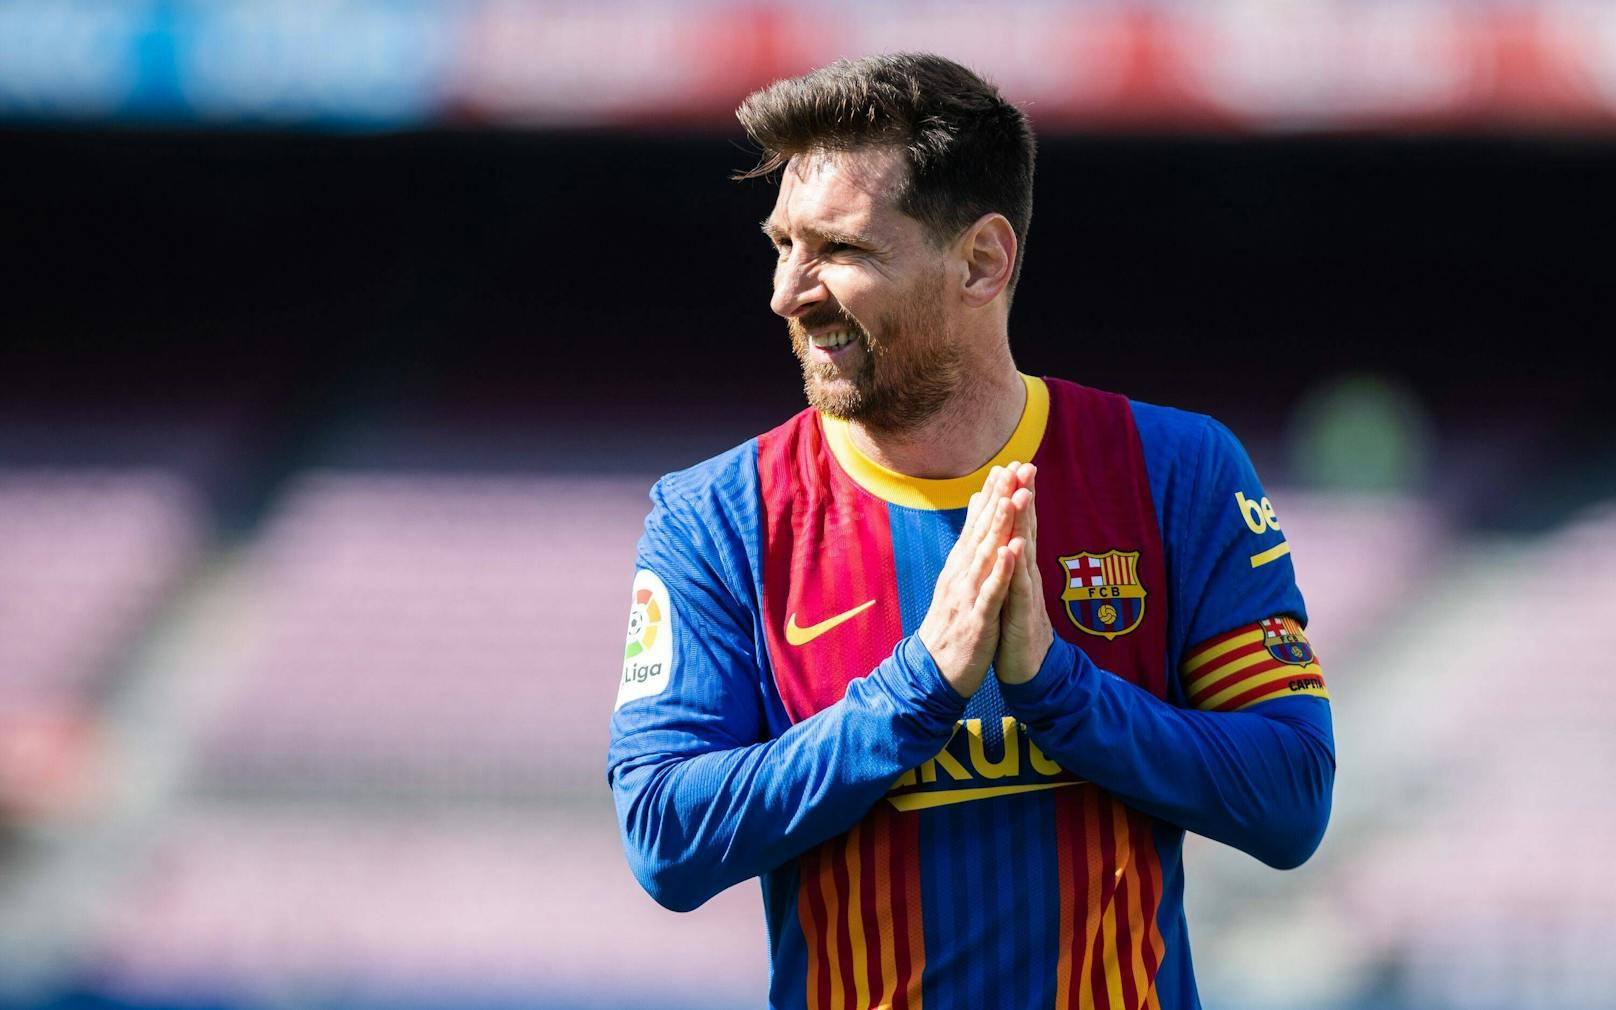 Darum hätte Messi auch nicht gratis für Barca gespielt